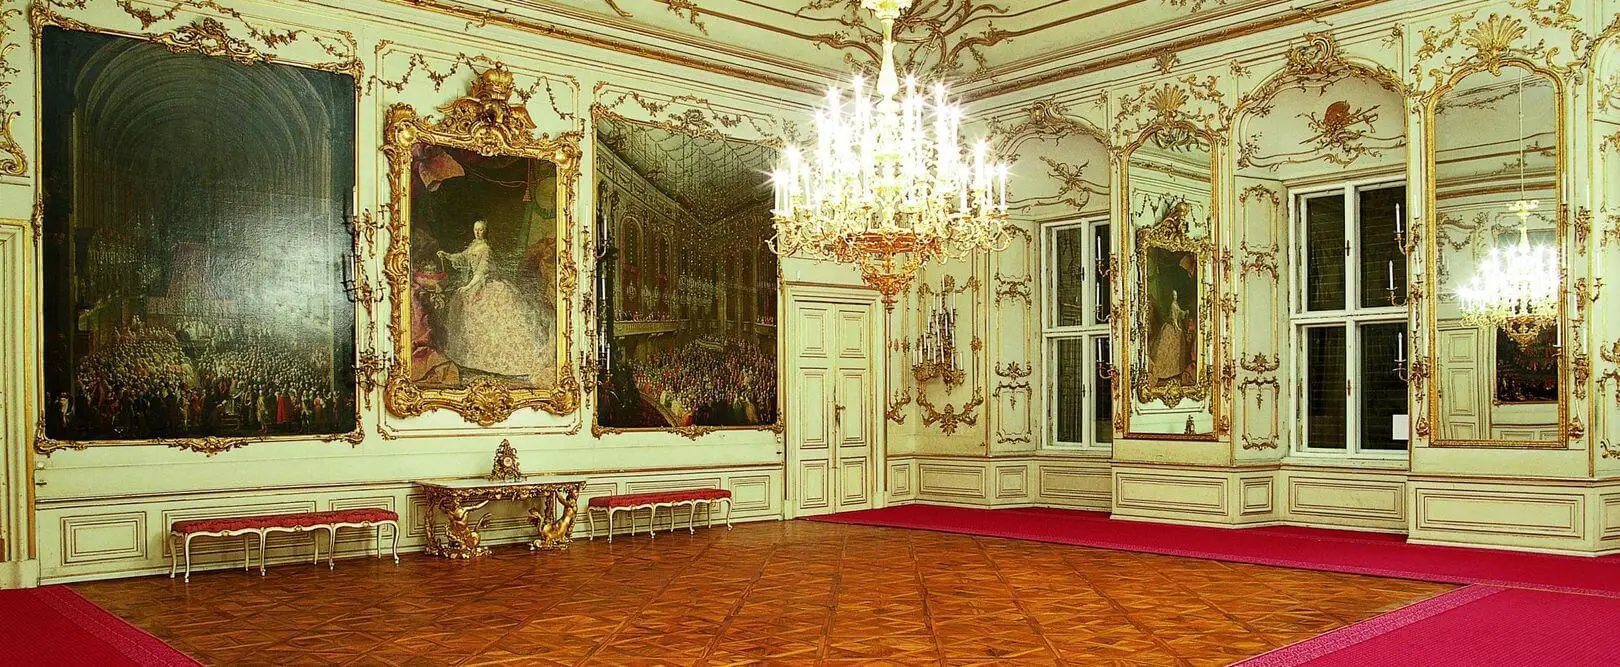 Salonul ceremoniilor de incoronare, Schonbrunn, Viena. Sursa foto: Edgar Knaack/schoenbrunn.at